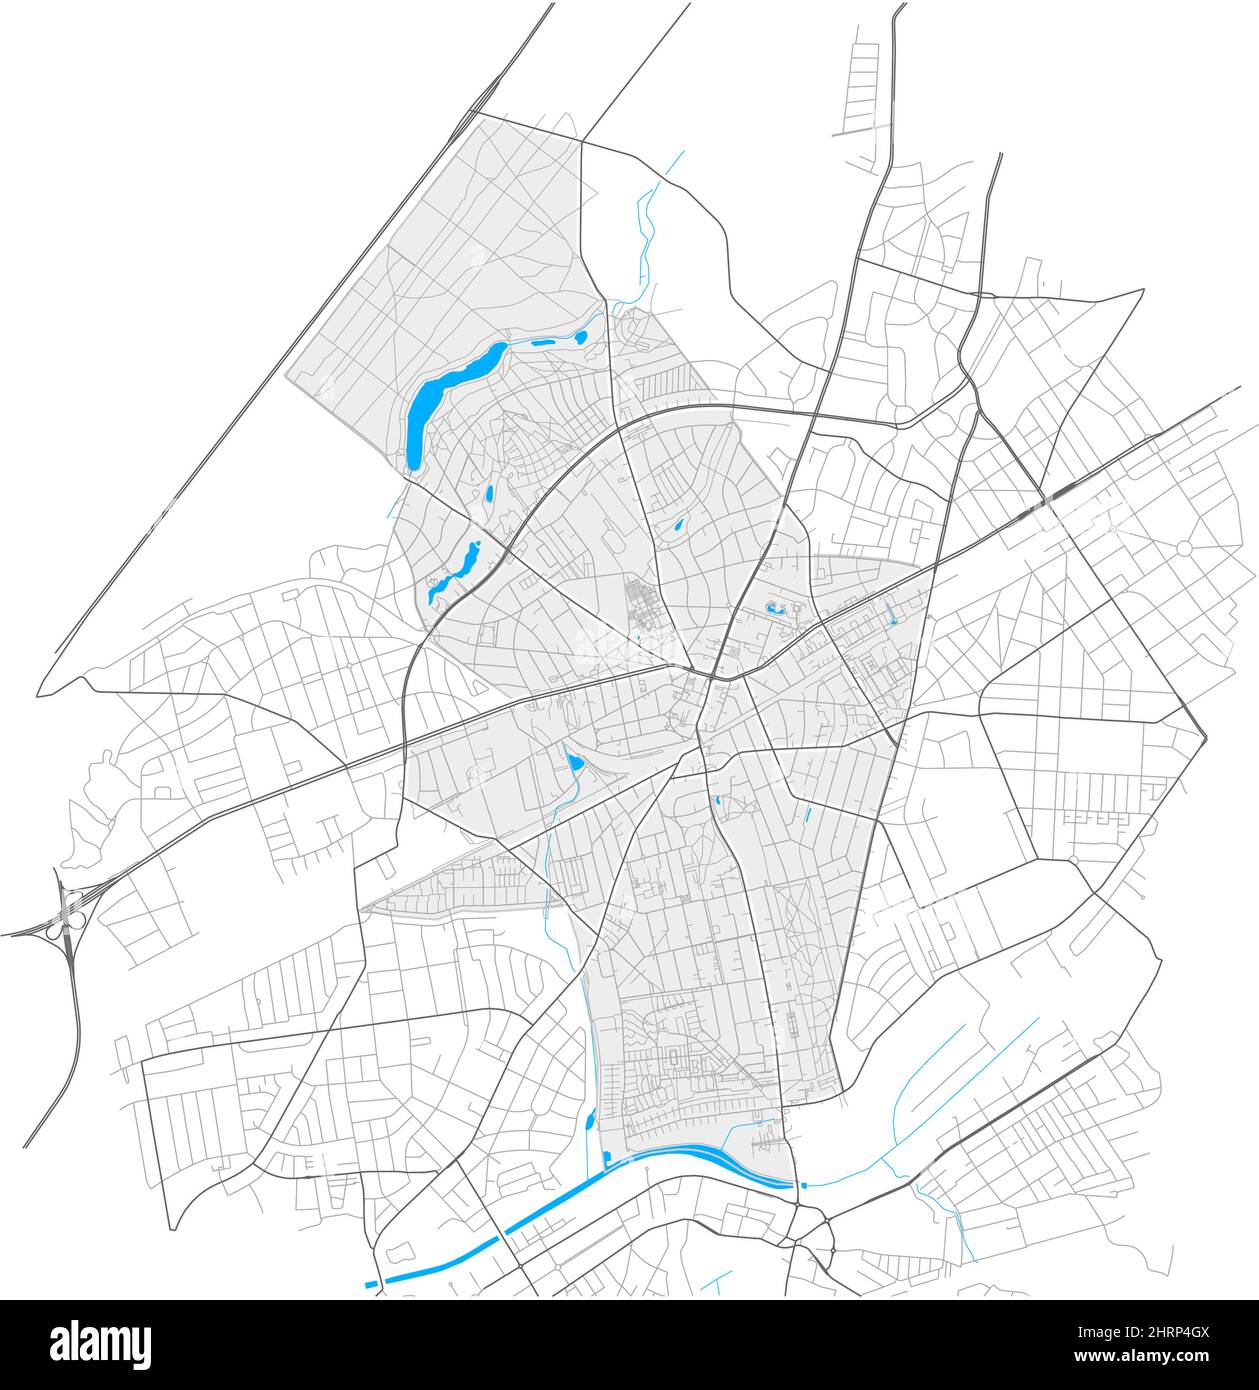 Zehlendorf, Berlino, GERMANIA, mappa vettoriale ad alto dettaglio con confini della città e percorsi modificabili. Contorni bianchi per le strade principali. Molti percorsi più piccoli. BL Illustrazione Vettoriale